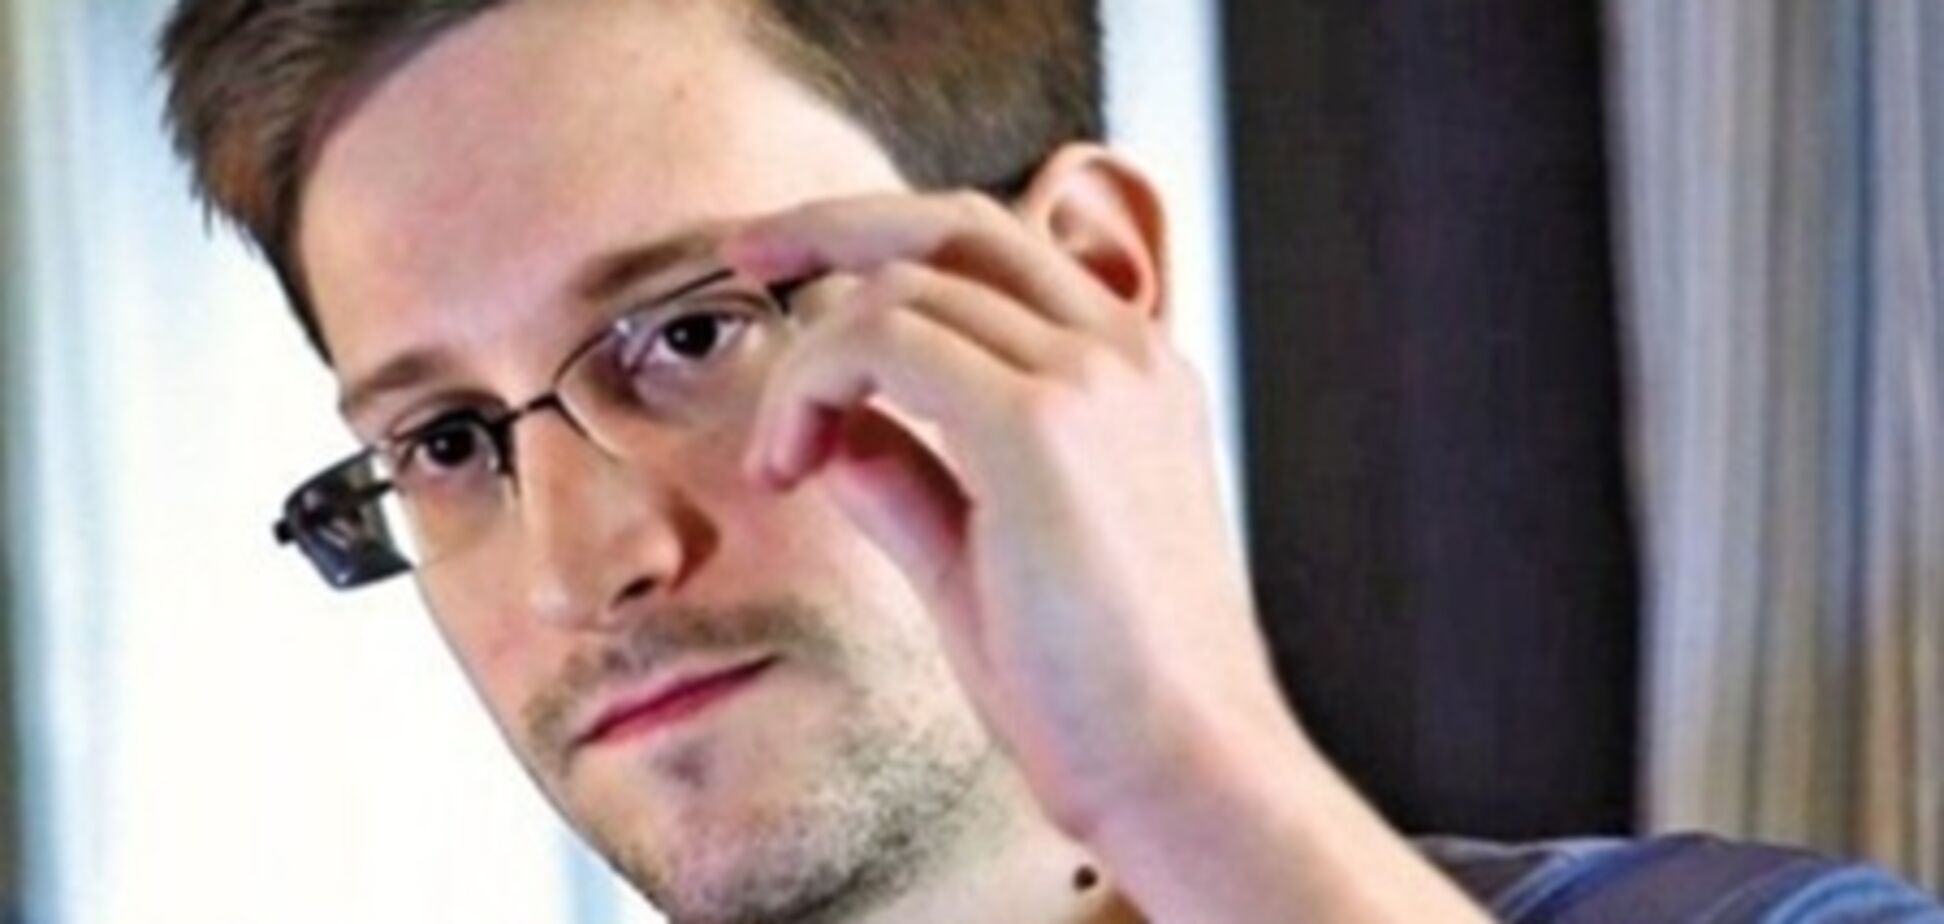 Сноуден передумав залишатися в Росії, дізнавшись про умови